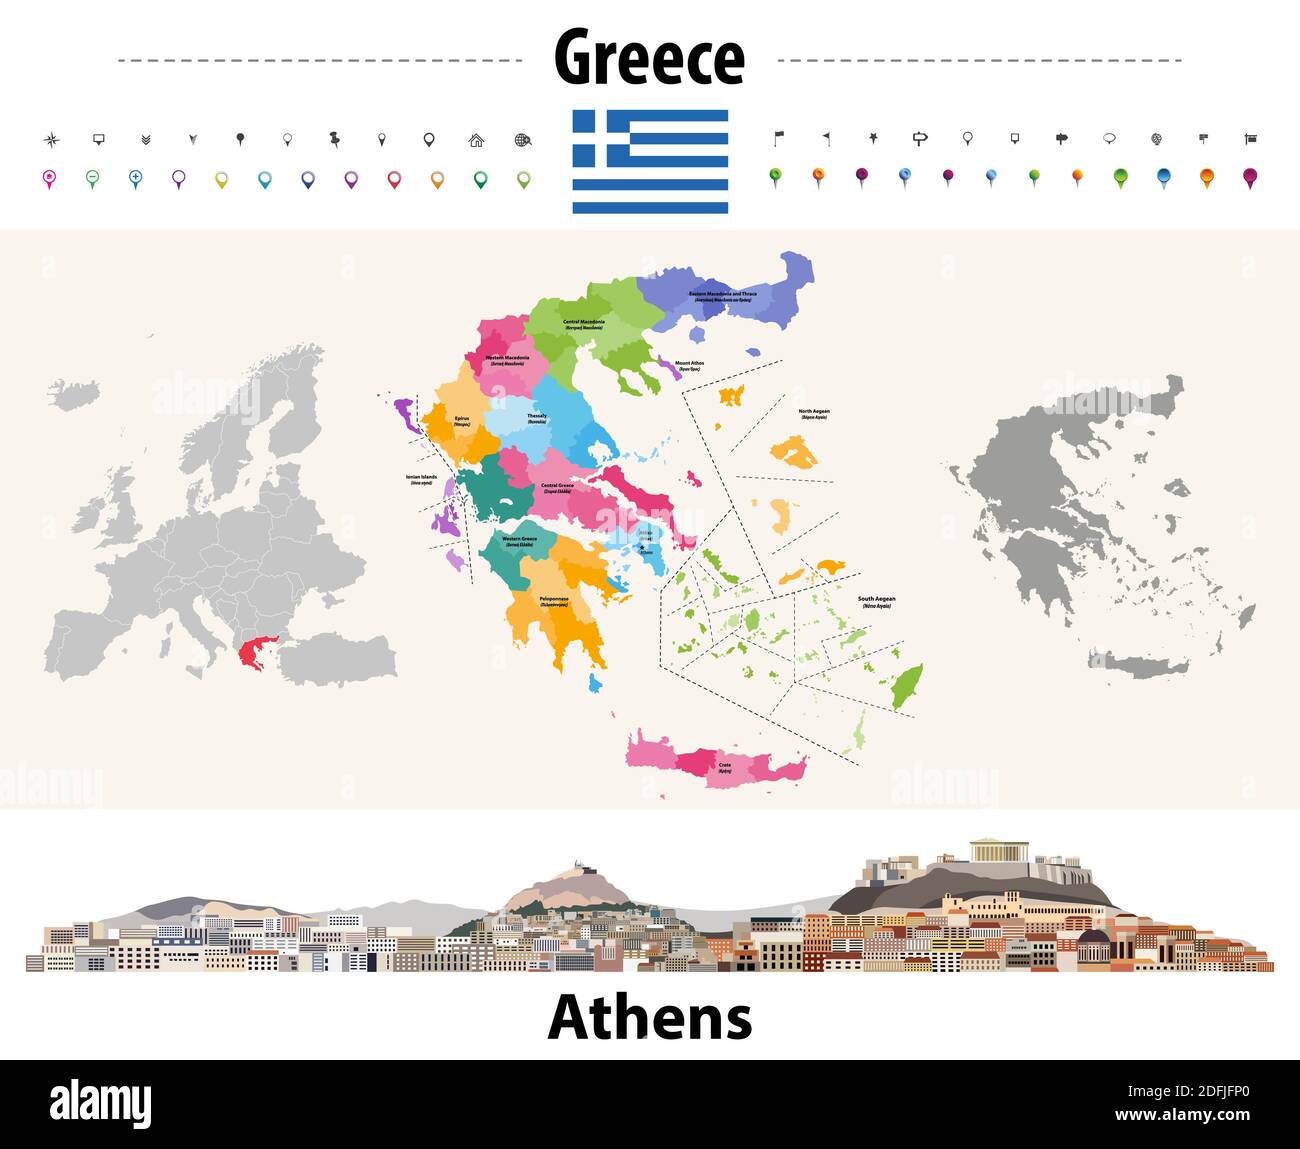 Griechenland Verwaltungsdivisionen Karte. Flagge Griechenlands. Stadtbild von Athen. Vektorgrafik Stock Vektor